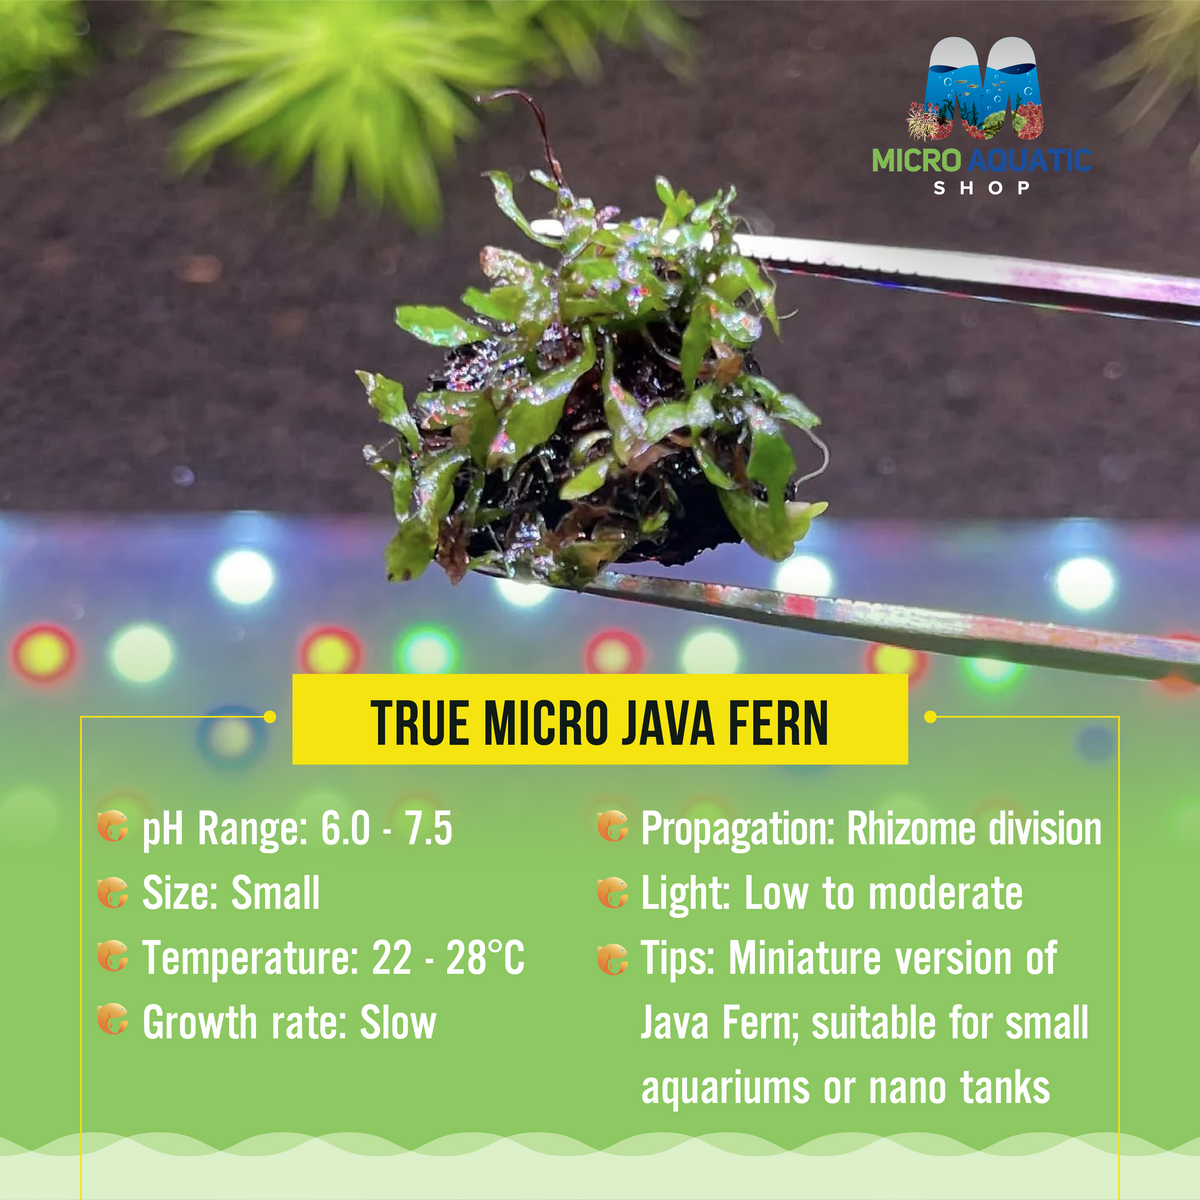 True Micro Java Fern